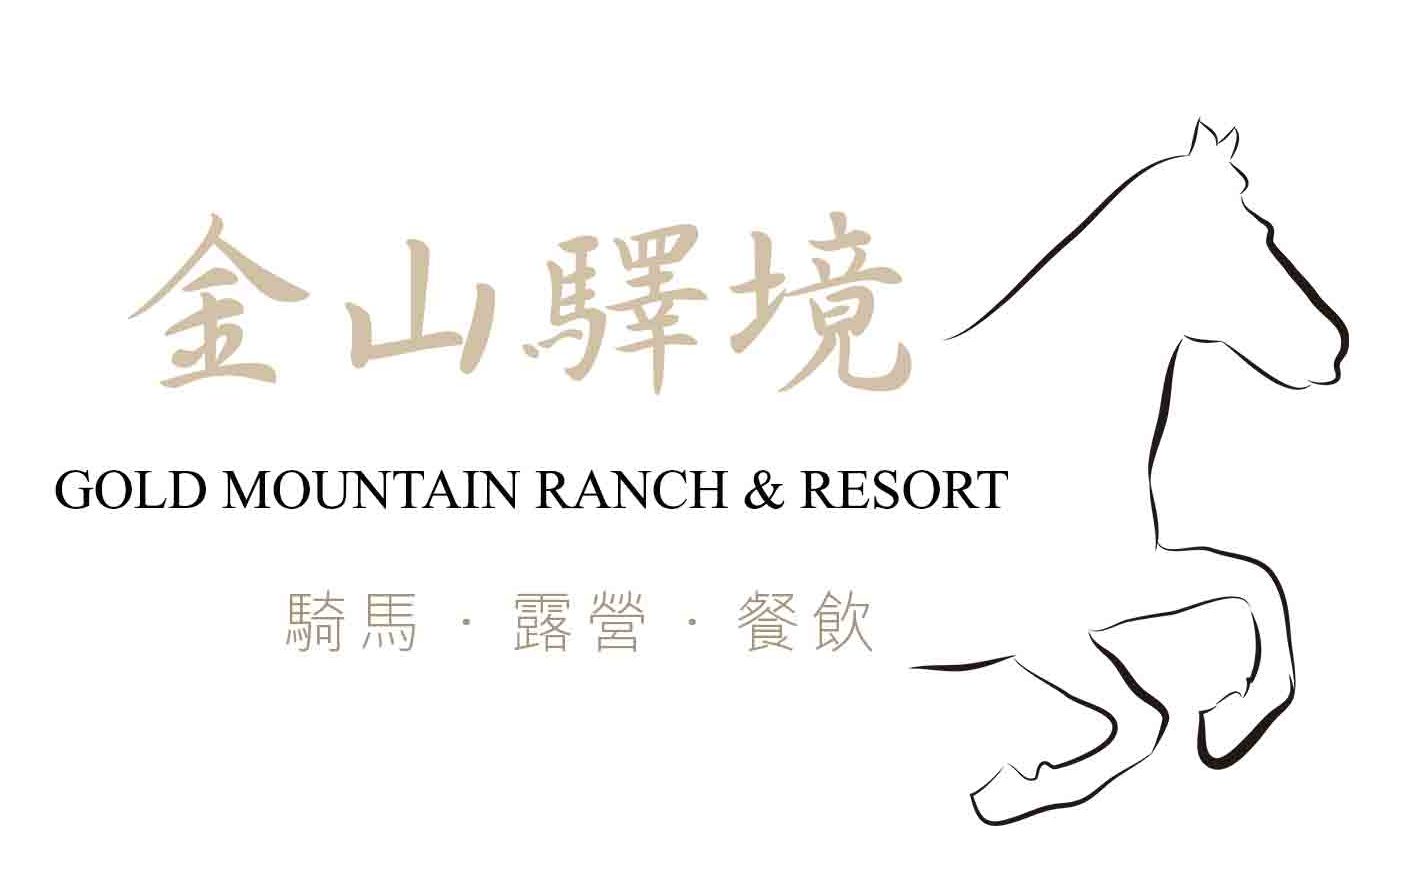 Gold Mountain Ranch & Resort |   Lodging